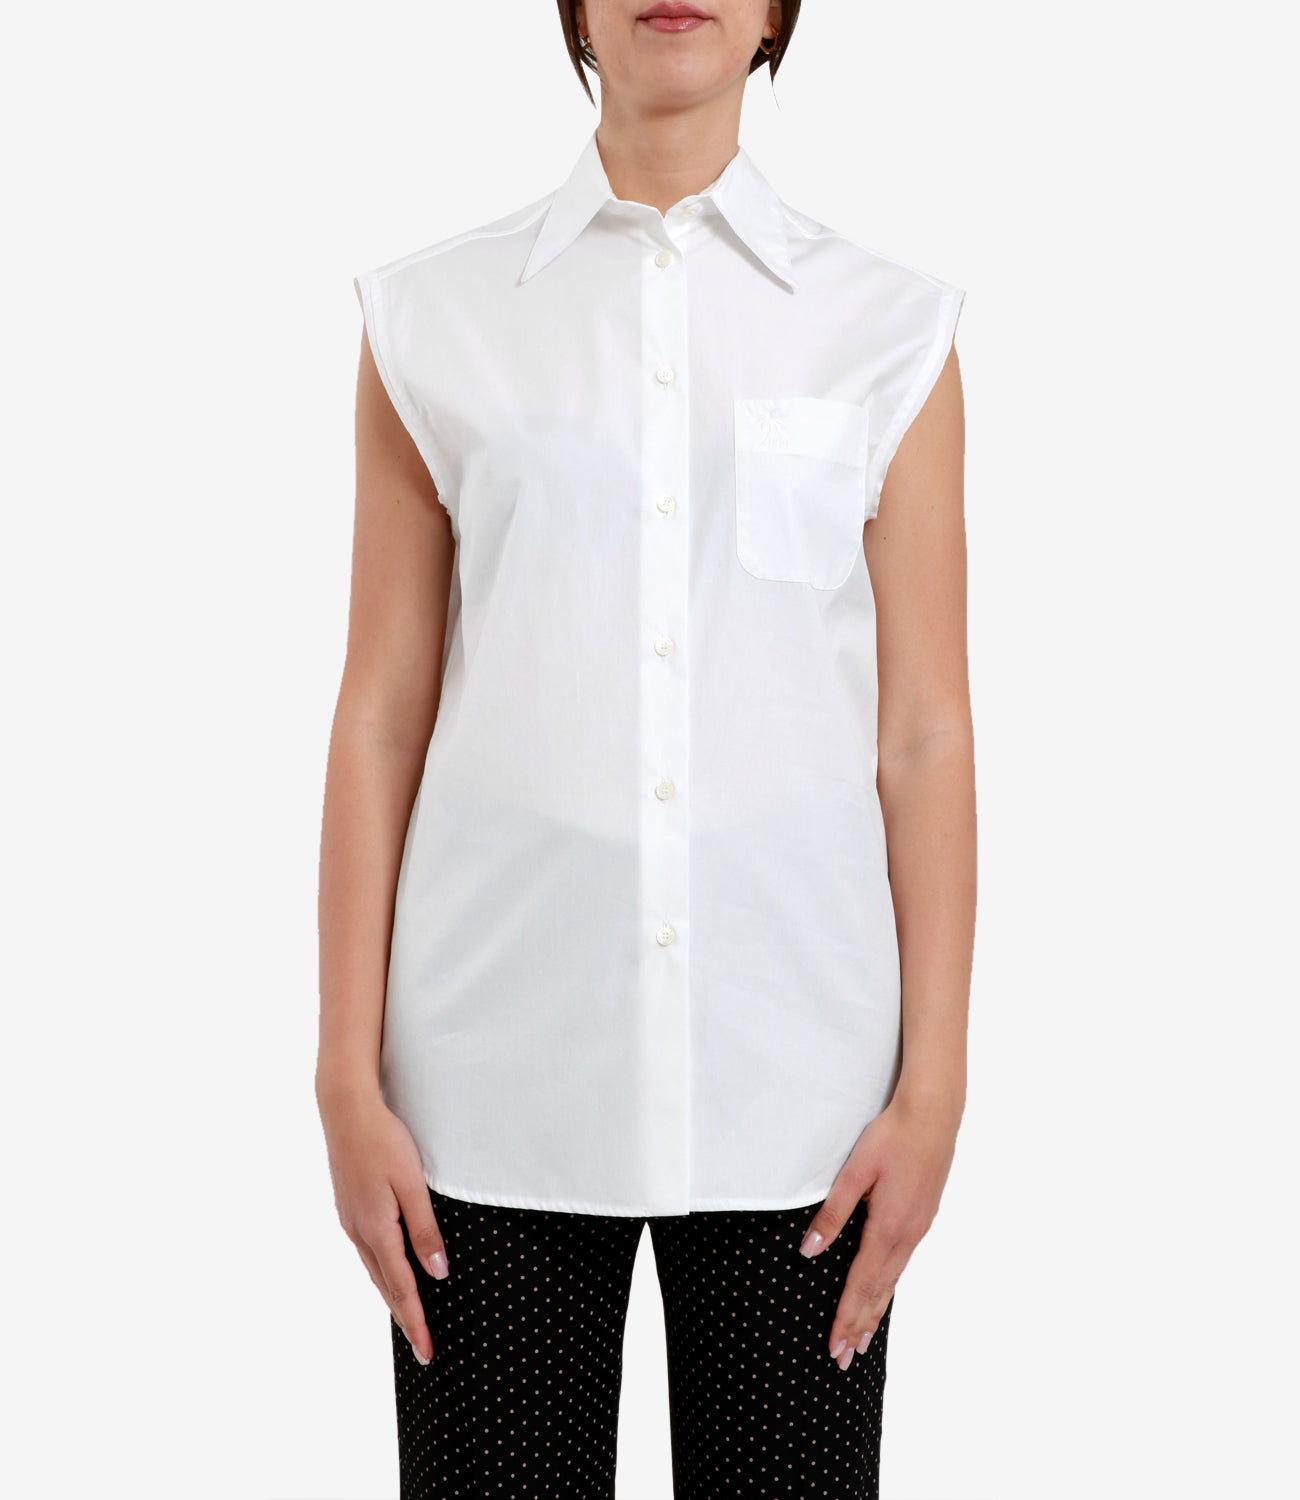 N 21 | Optical White Shirt